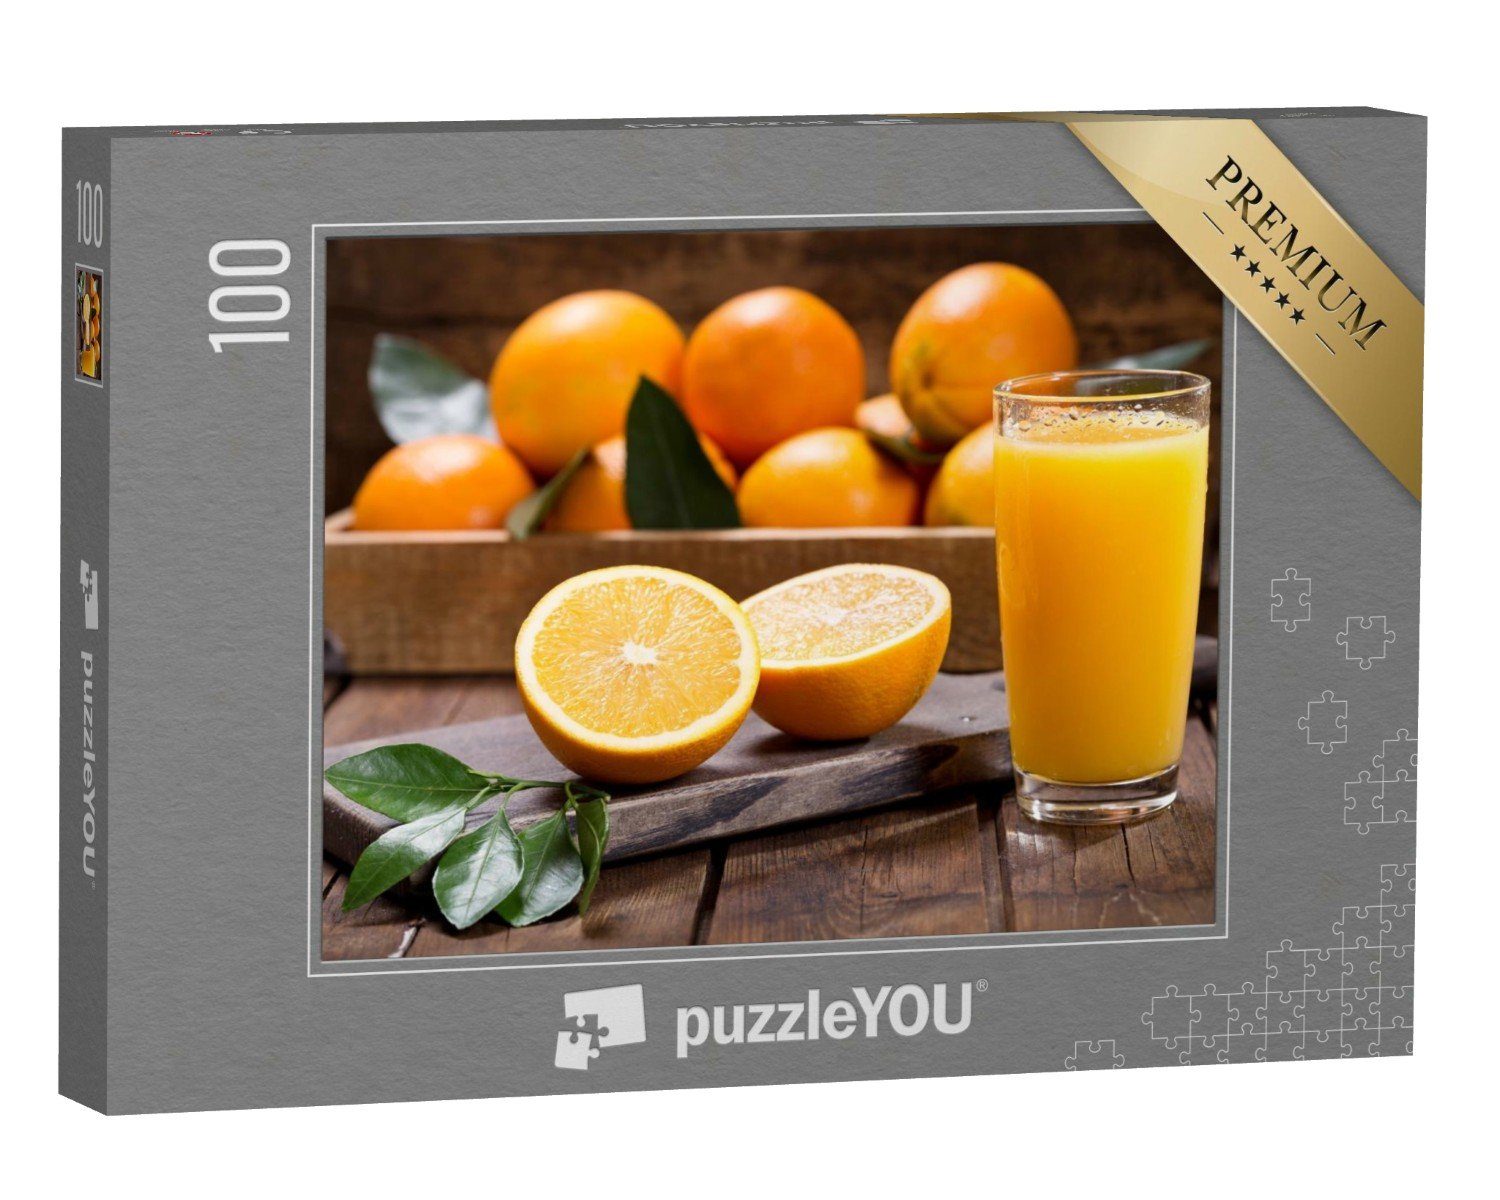 puzzleYOU Puzzle Glas frischer Orangensaft, 100 Puzzleteile, puzzleYOU-Kollektionen Obst, Essen und Trinken